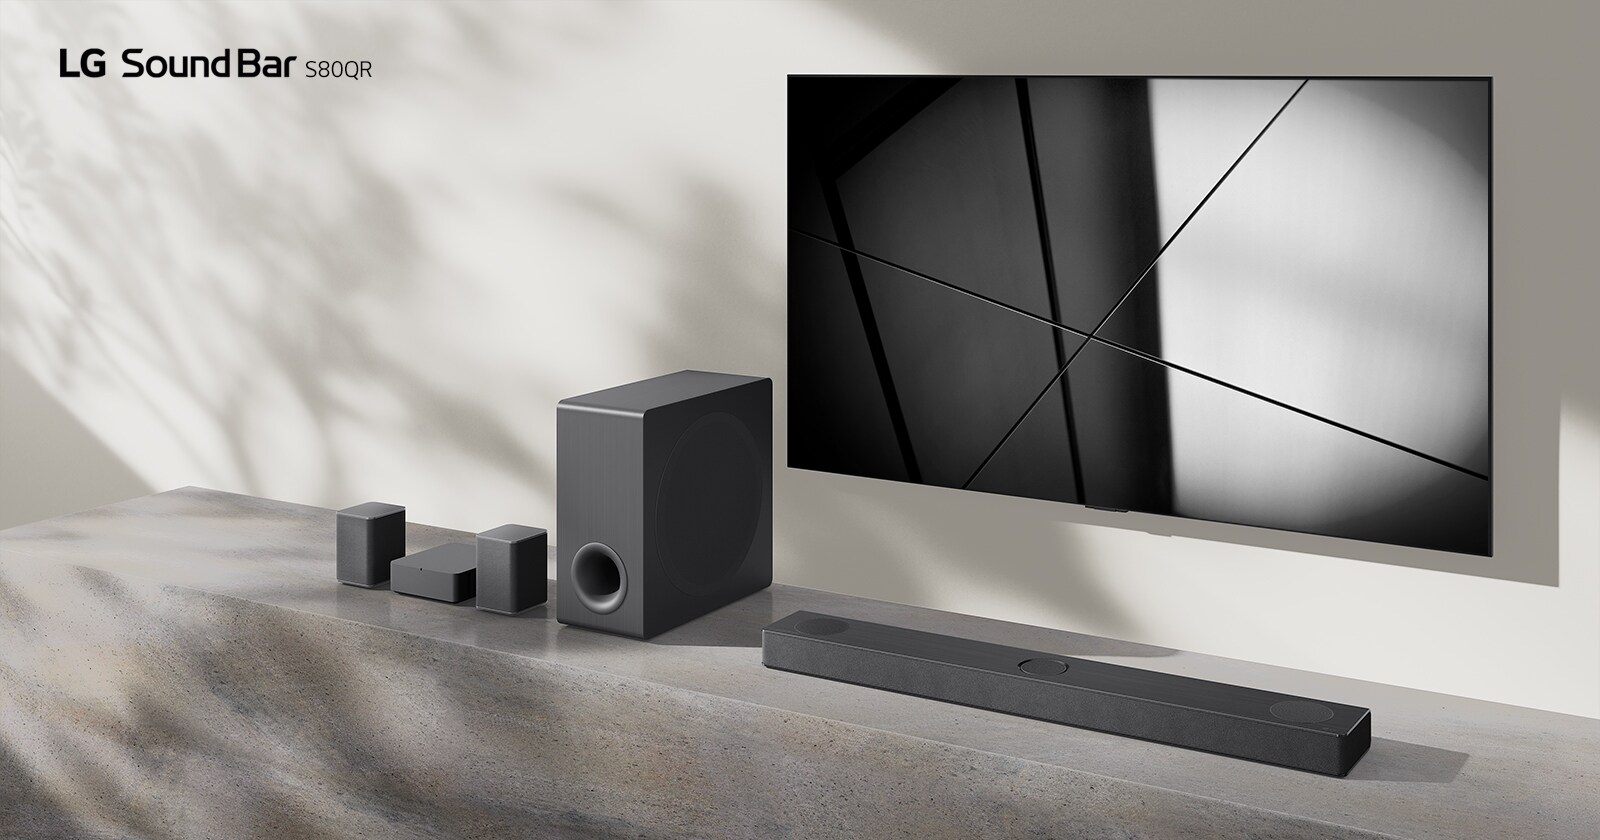 LG Sound Bar S80QR i LG TV nalaze se zajedno u dnevnoj sobi. TV je uključen i prikazuje crno-bijelu sliku.